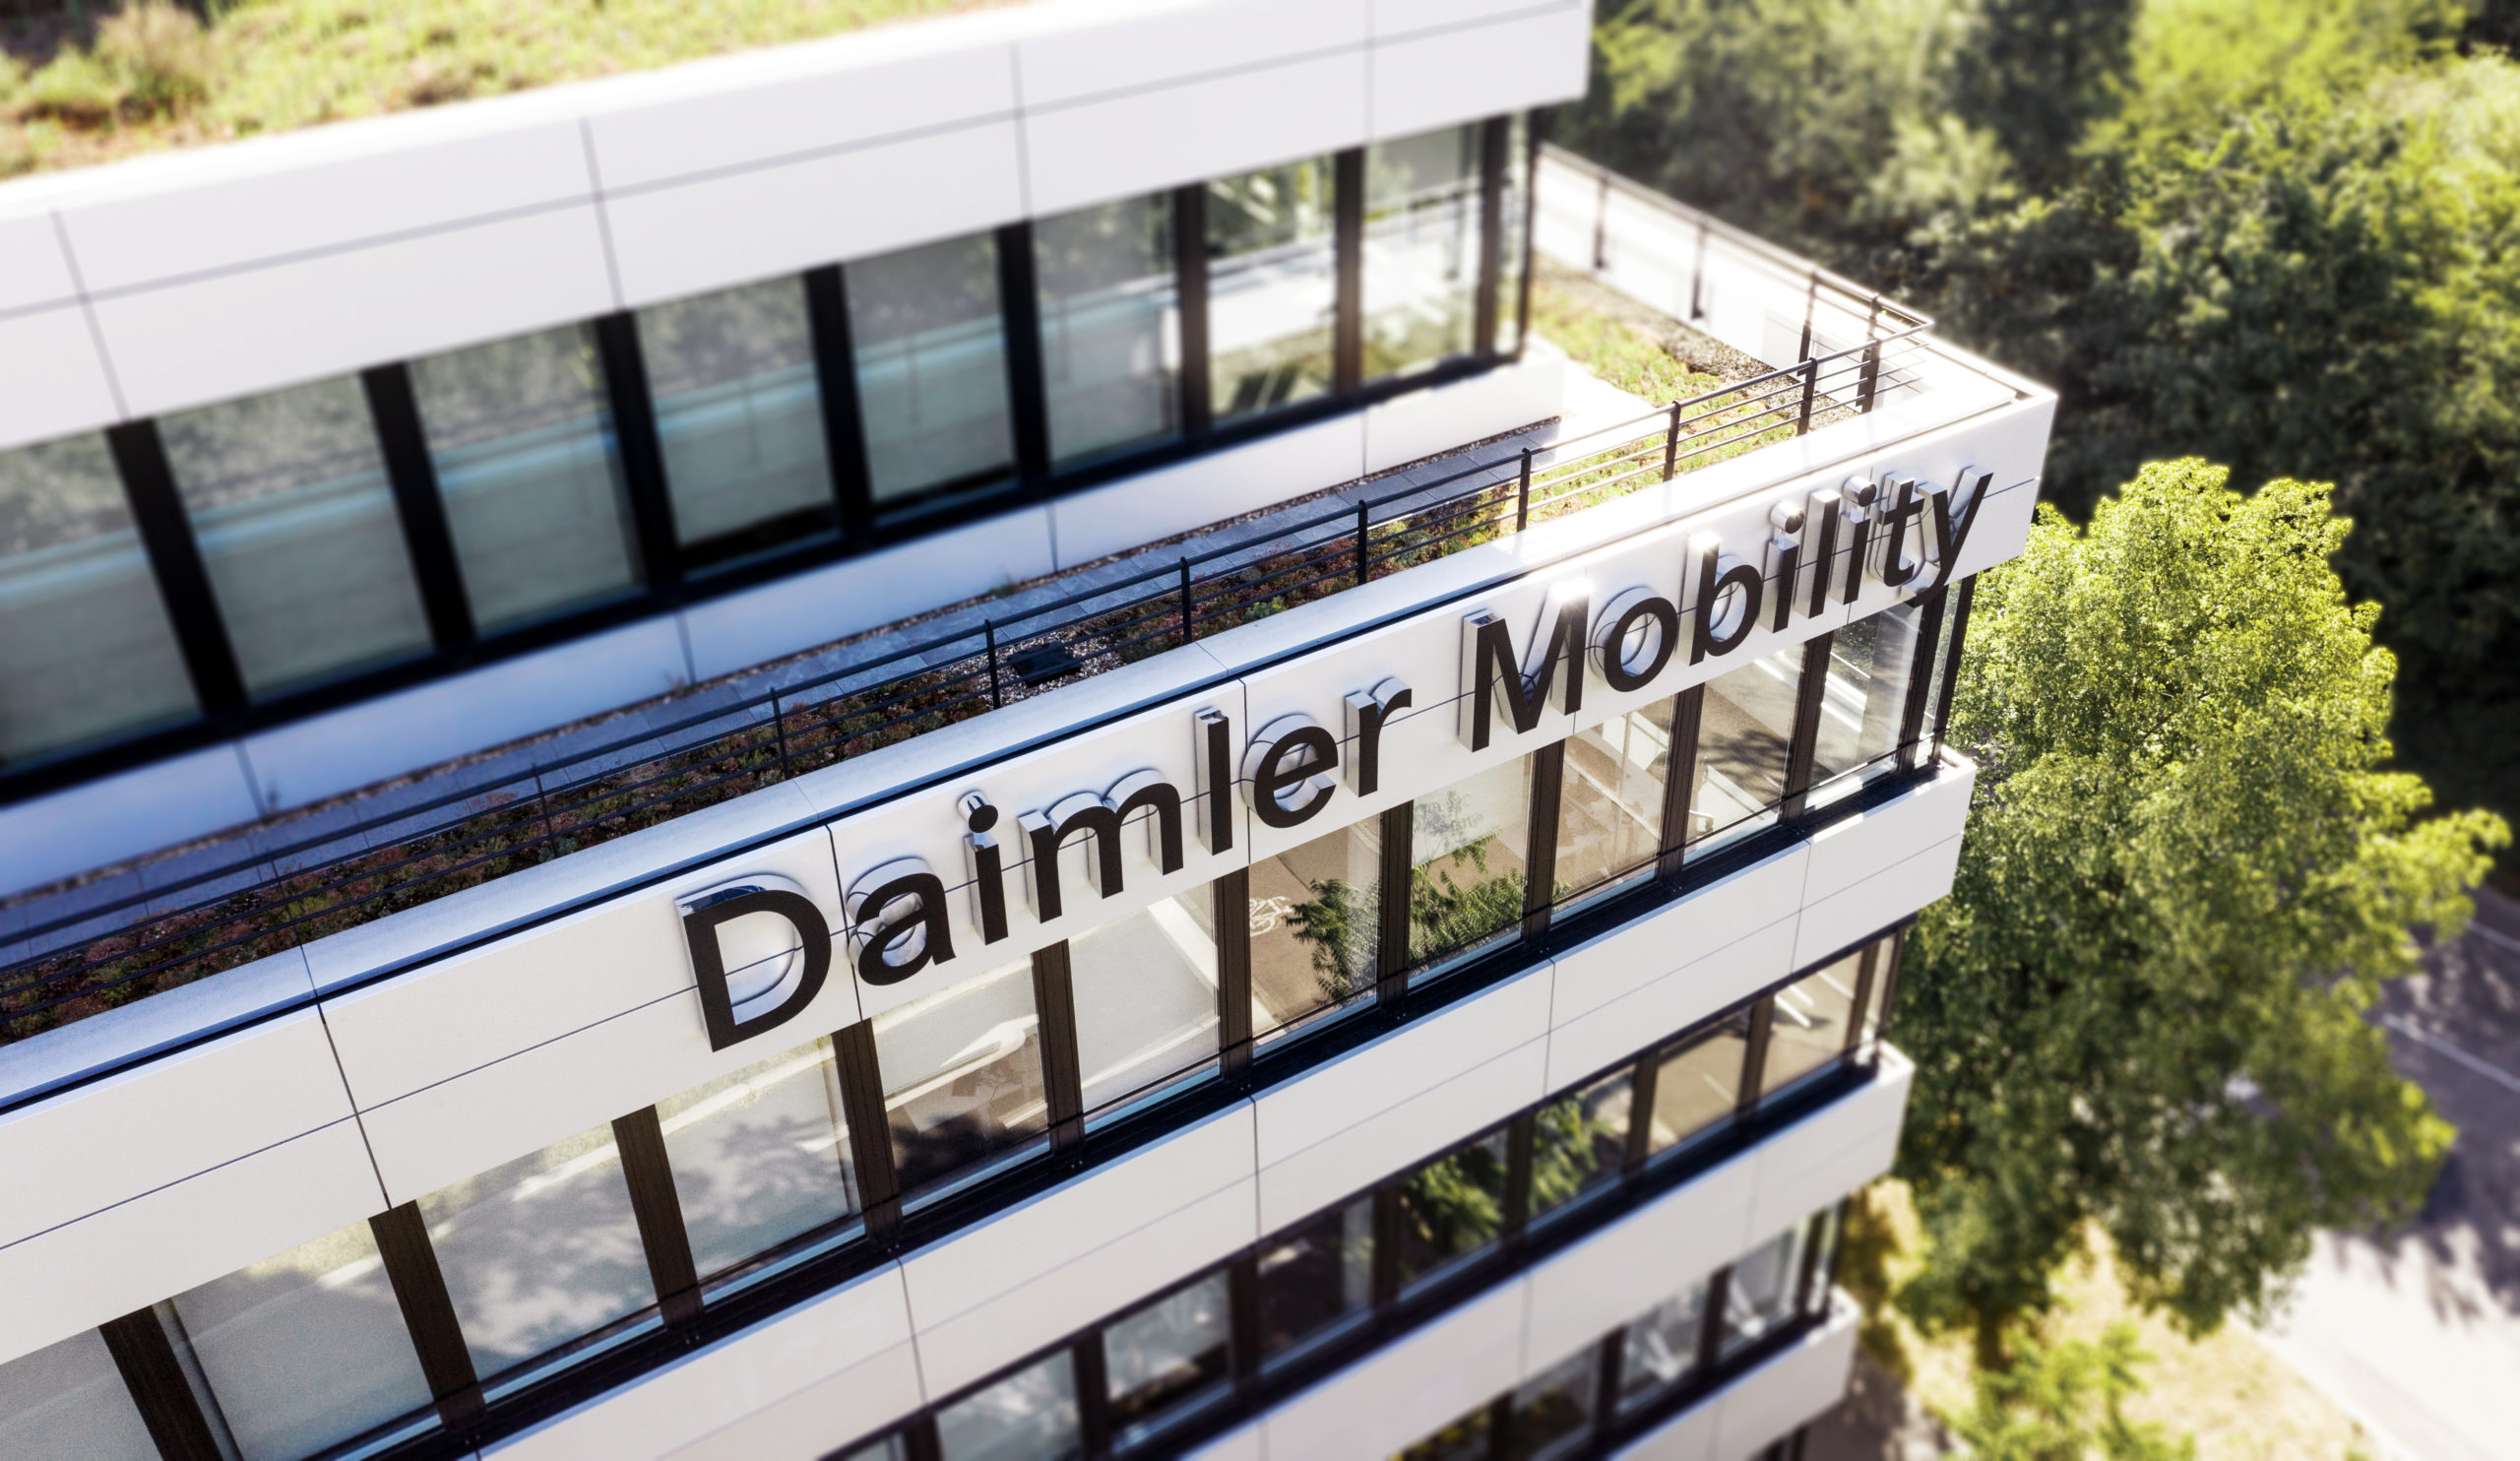 Neuer Name Daimler Mobility unterstreicht den strategischen Anspruch des Geschäftsfelds, zukünftig maximal flexible Mobilitätslösungen umfassend anbieten zu wollen. 

New name Daimler Mobility underlines the strategic standard the business division has set for itself: to offer comprehensive flexible mobility solutions in the future.